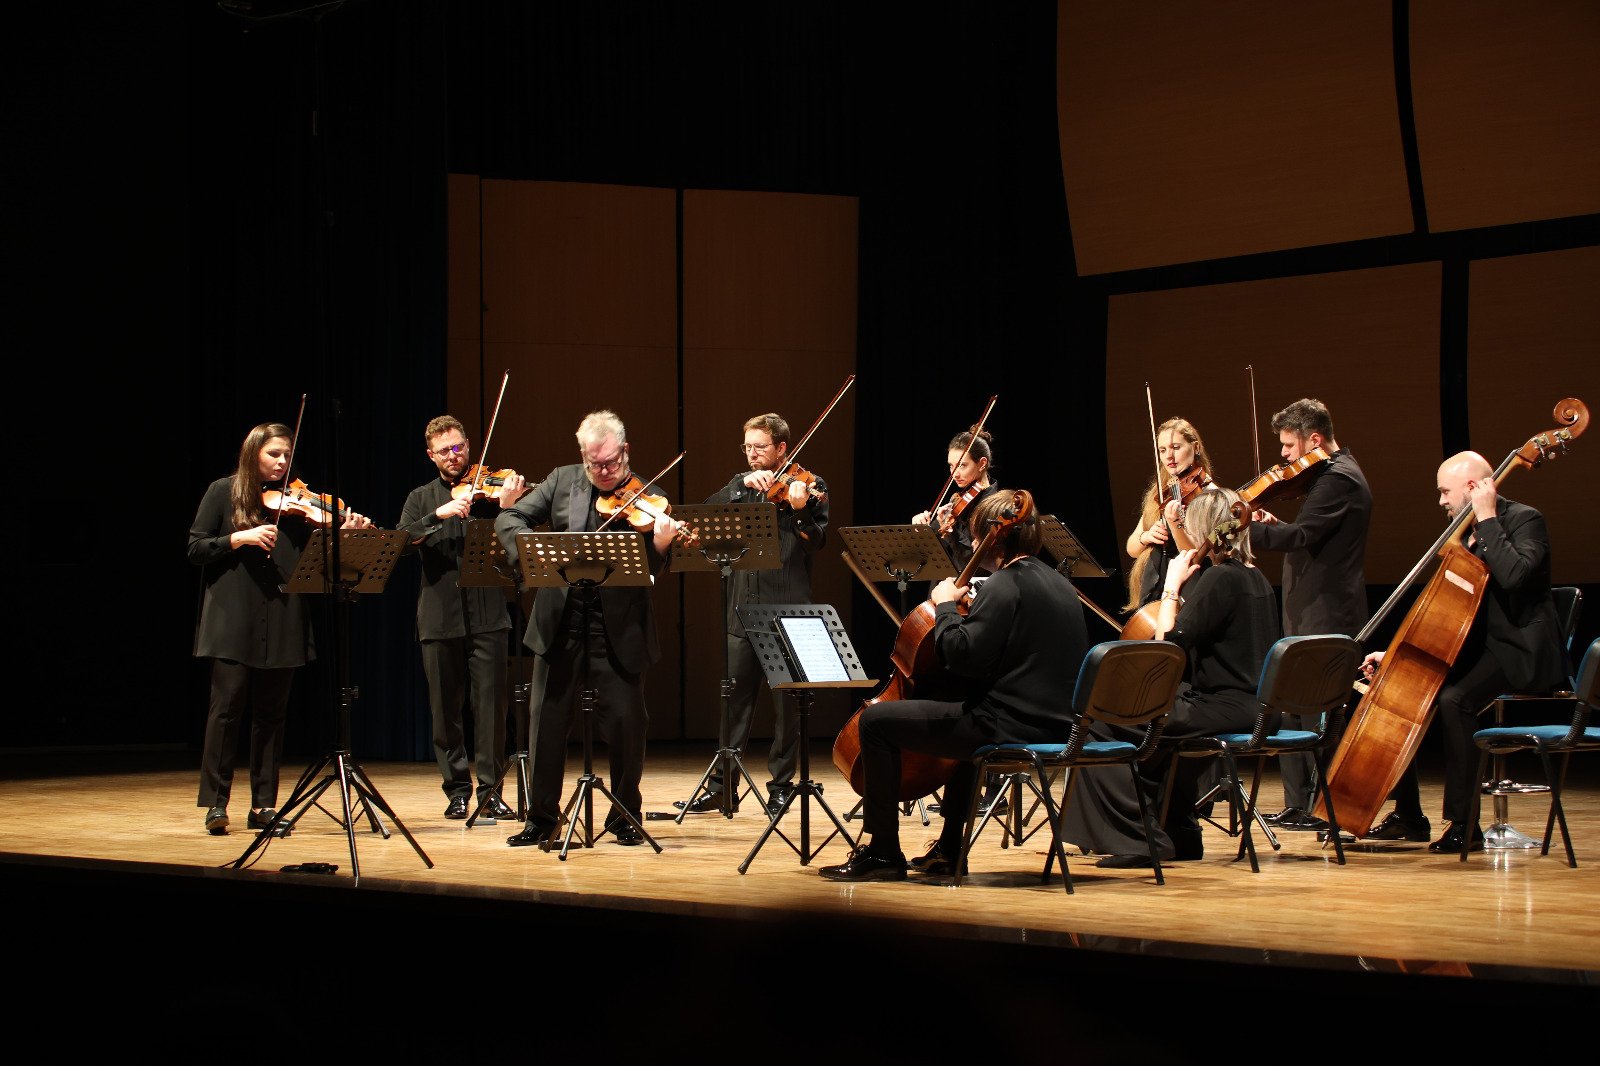 Две страны, два оркестра - Kremerata Baltika и Baku Chamber Orchestra. Грандиозный концерт в Анкаре (ФОТО)